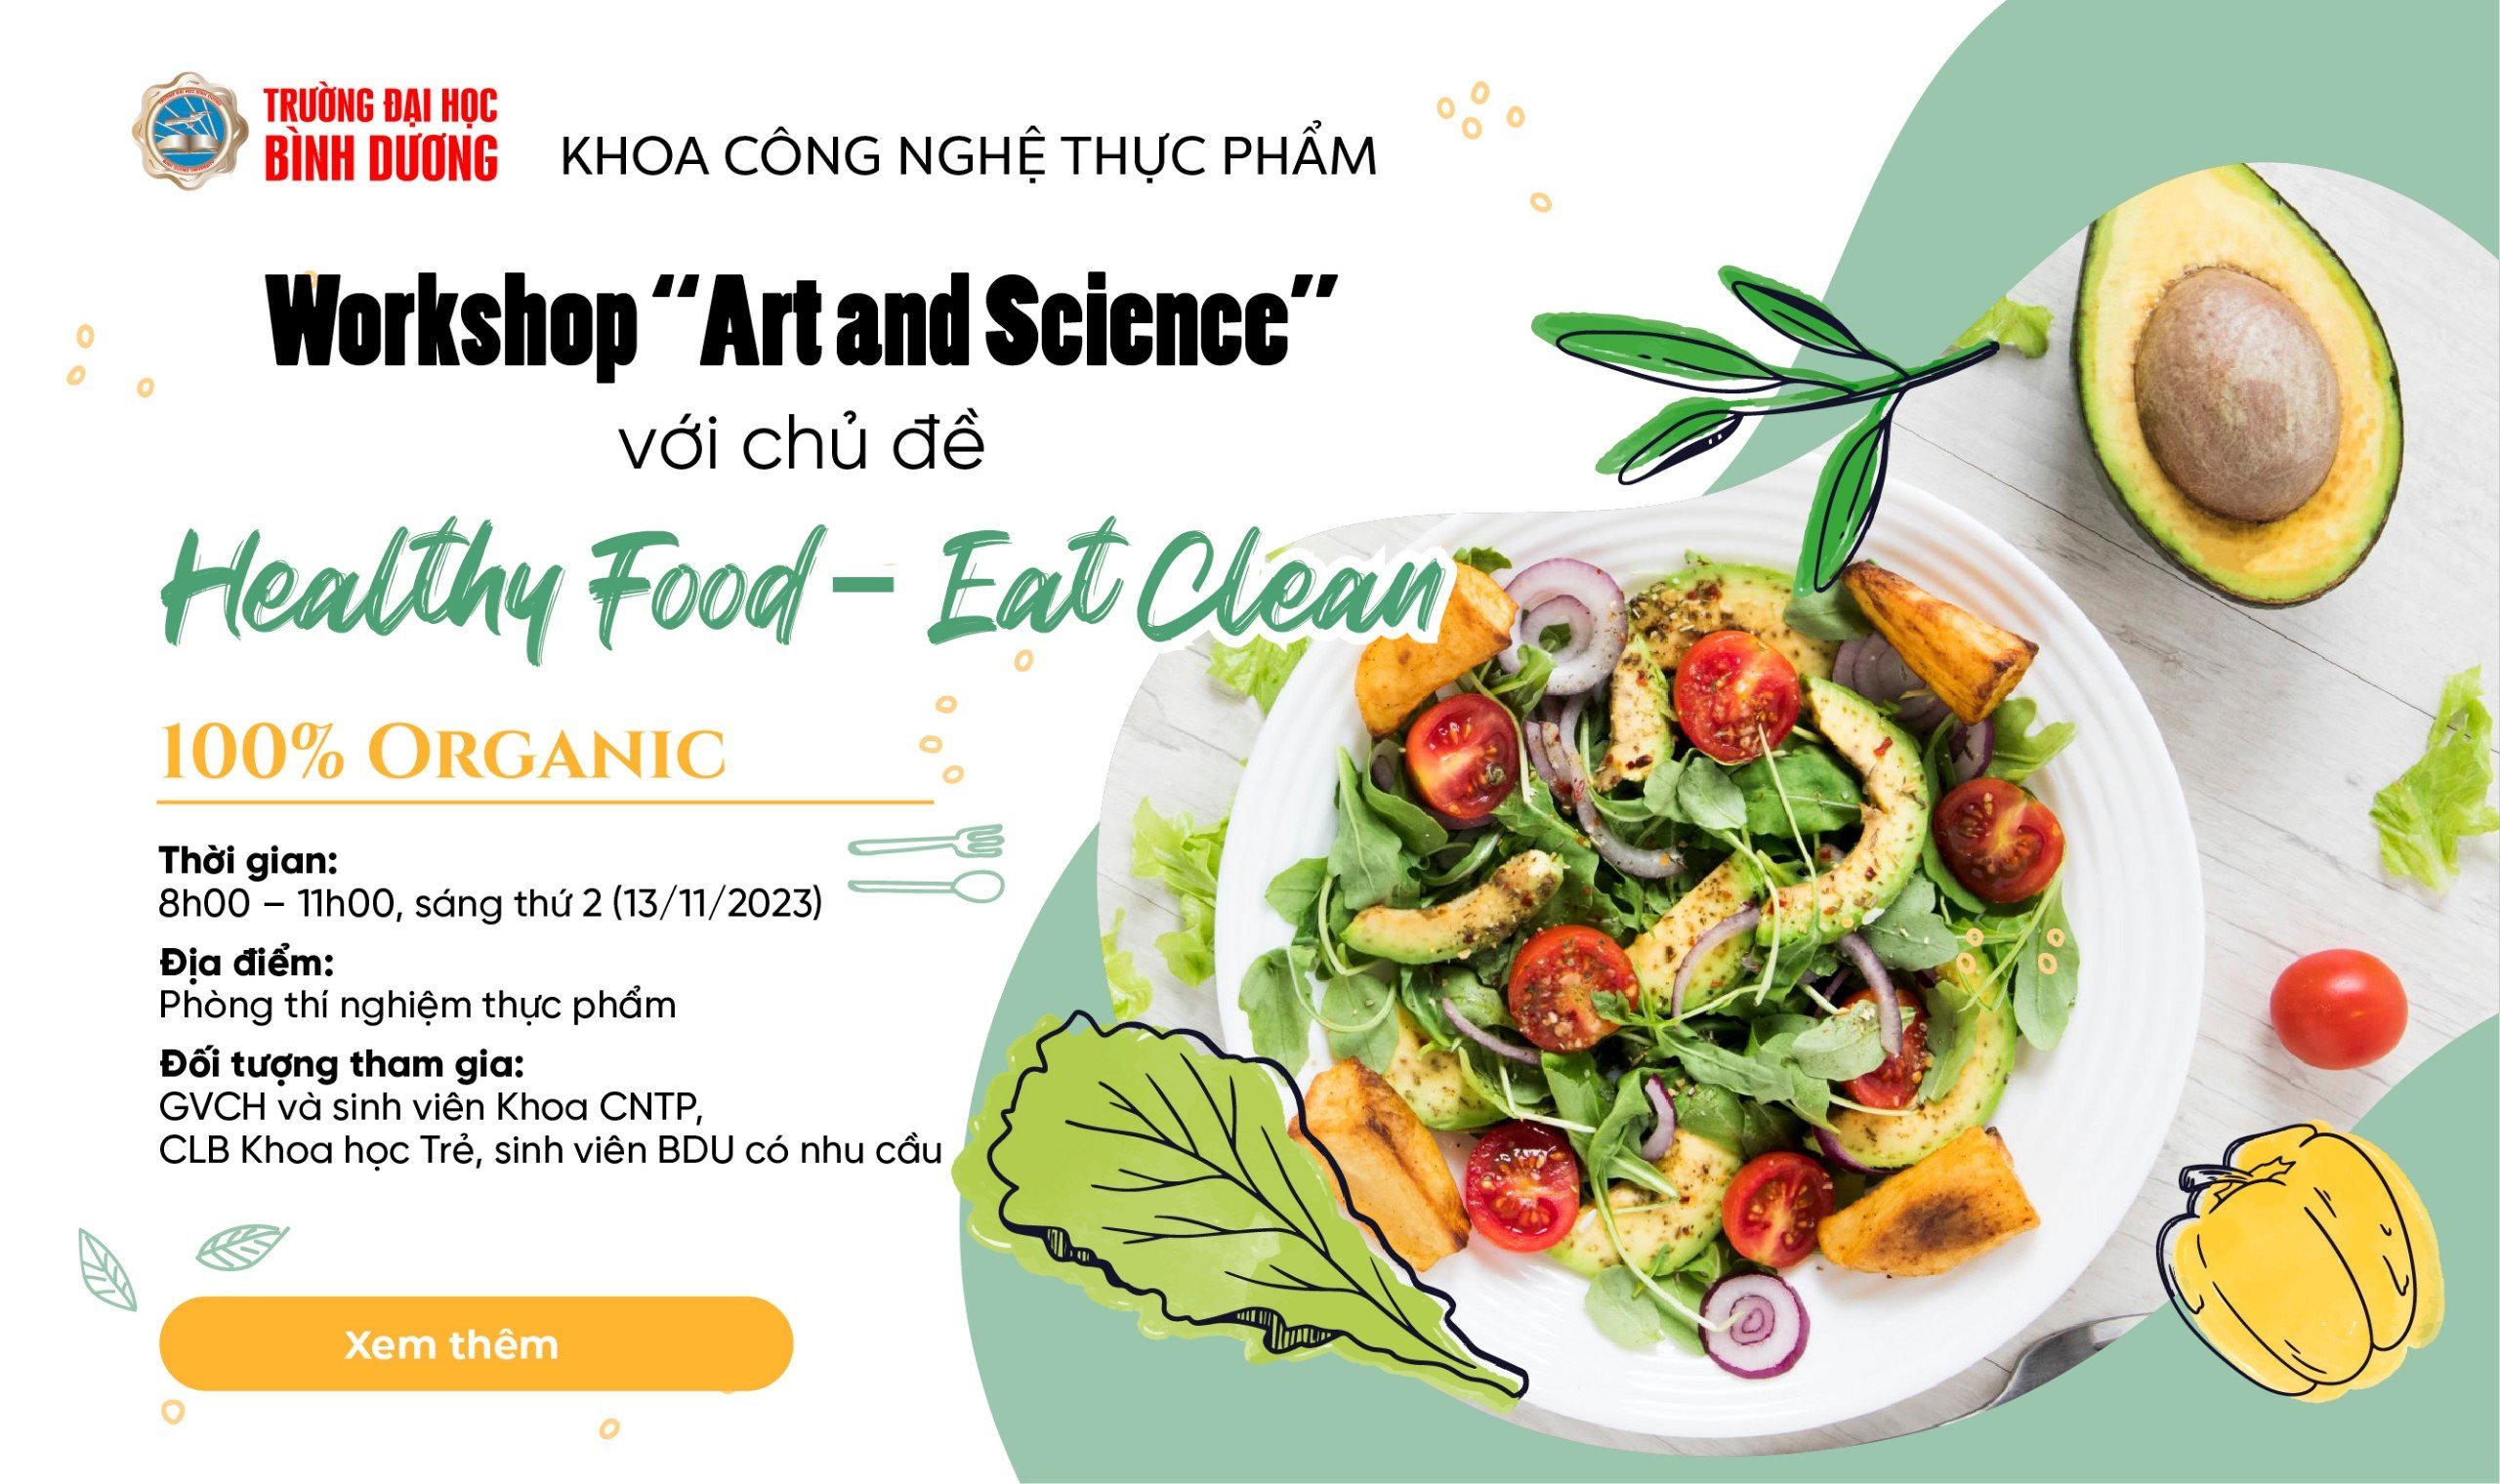 "Healthy Food - Eat Clean" - Workshop về ẩm thực lành mạnh!